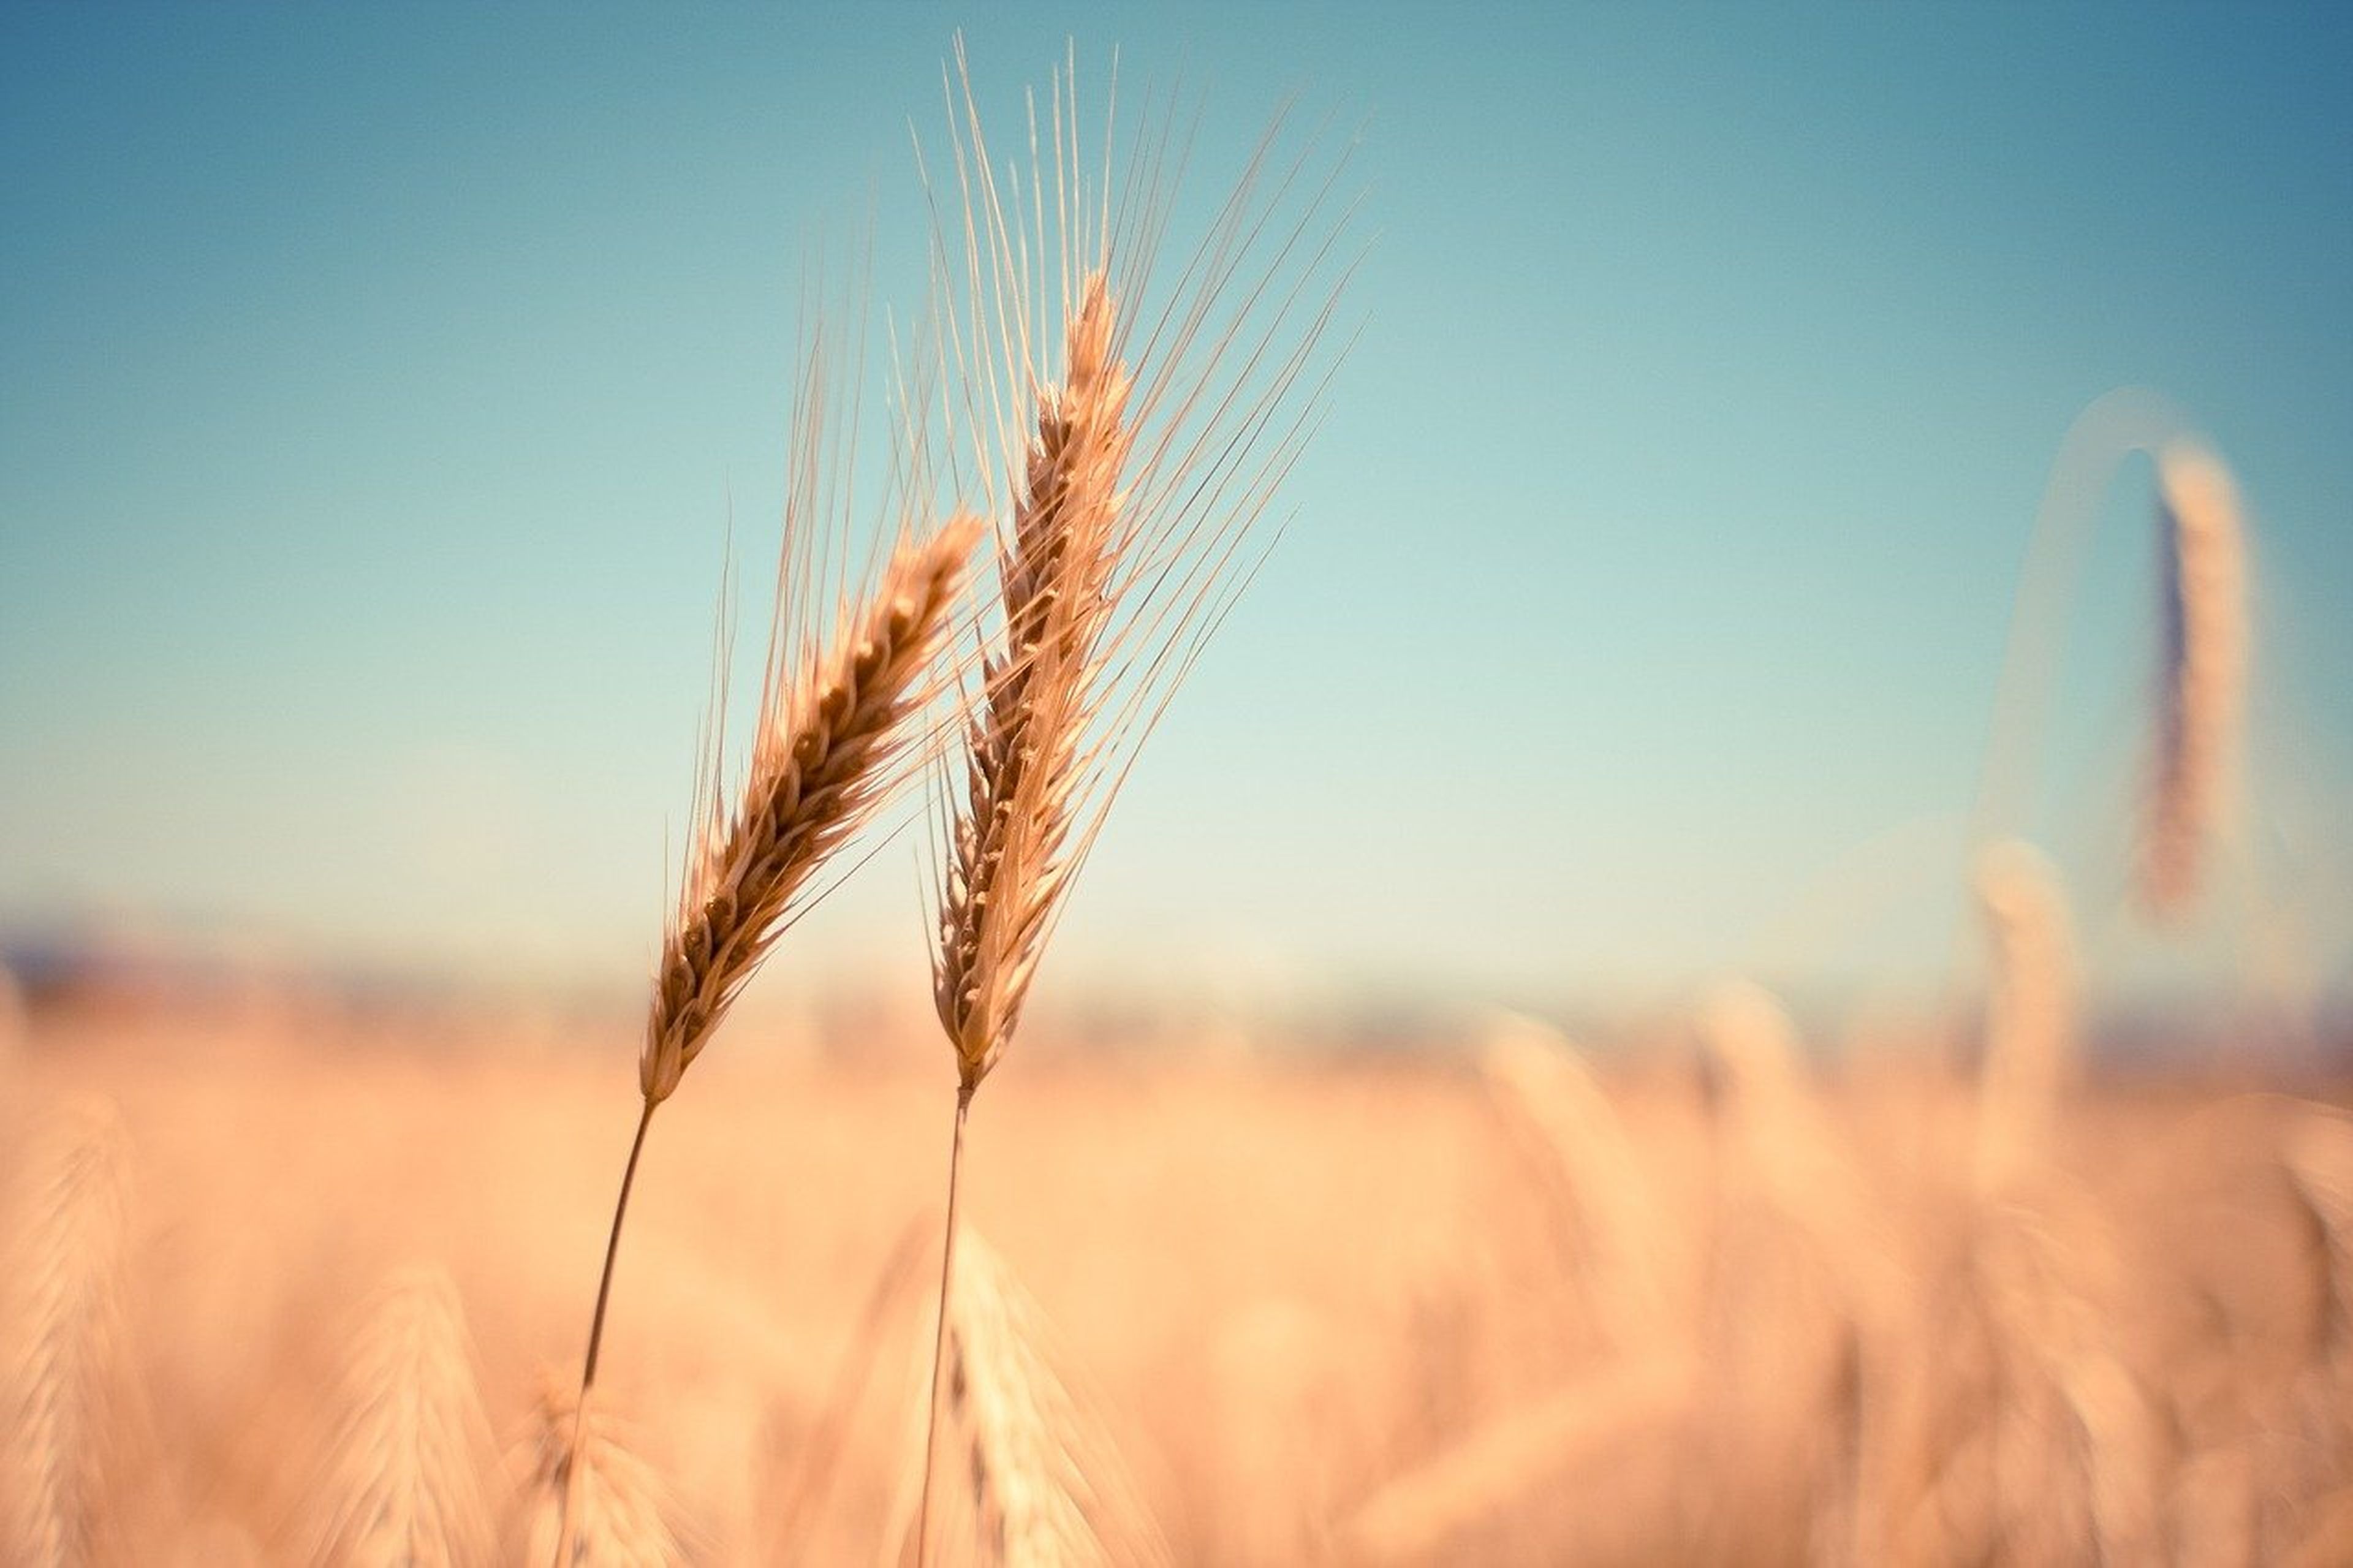 Más de la mitad de la población global solo depende de 3 cultivos: arroz, trigo y maíz.